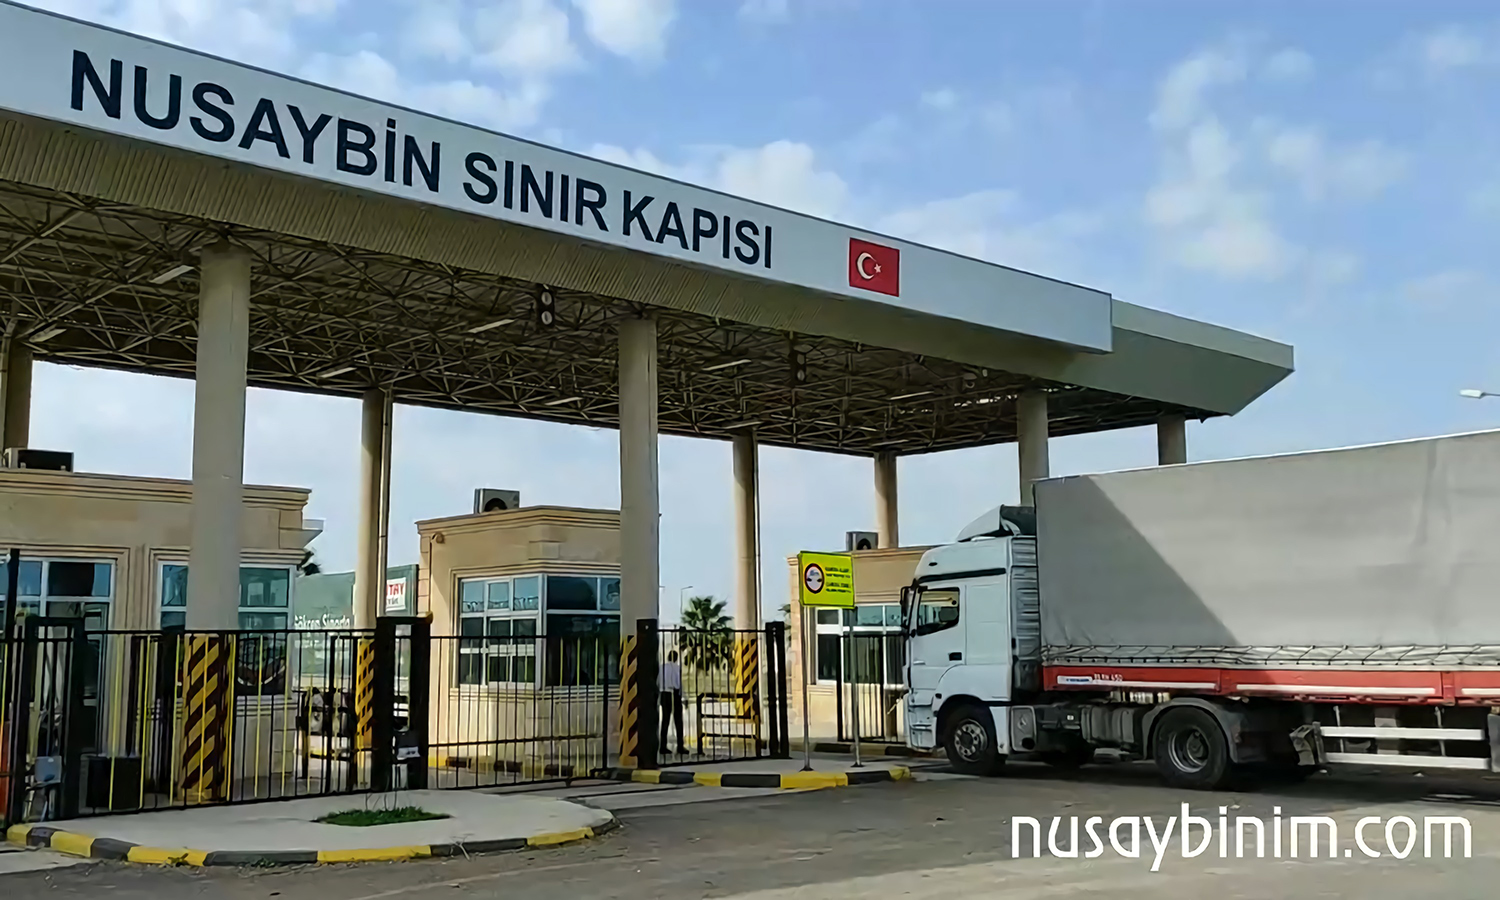 الجانب التركي من معبر "نصيبين" الحدودي بين سوريا وتركيا (nusaybinim.com)